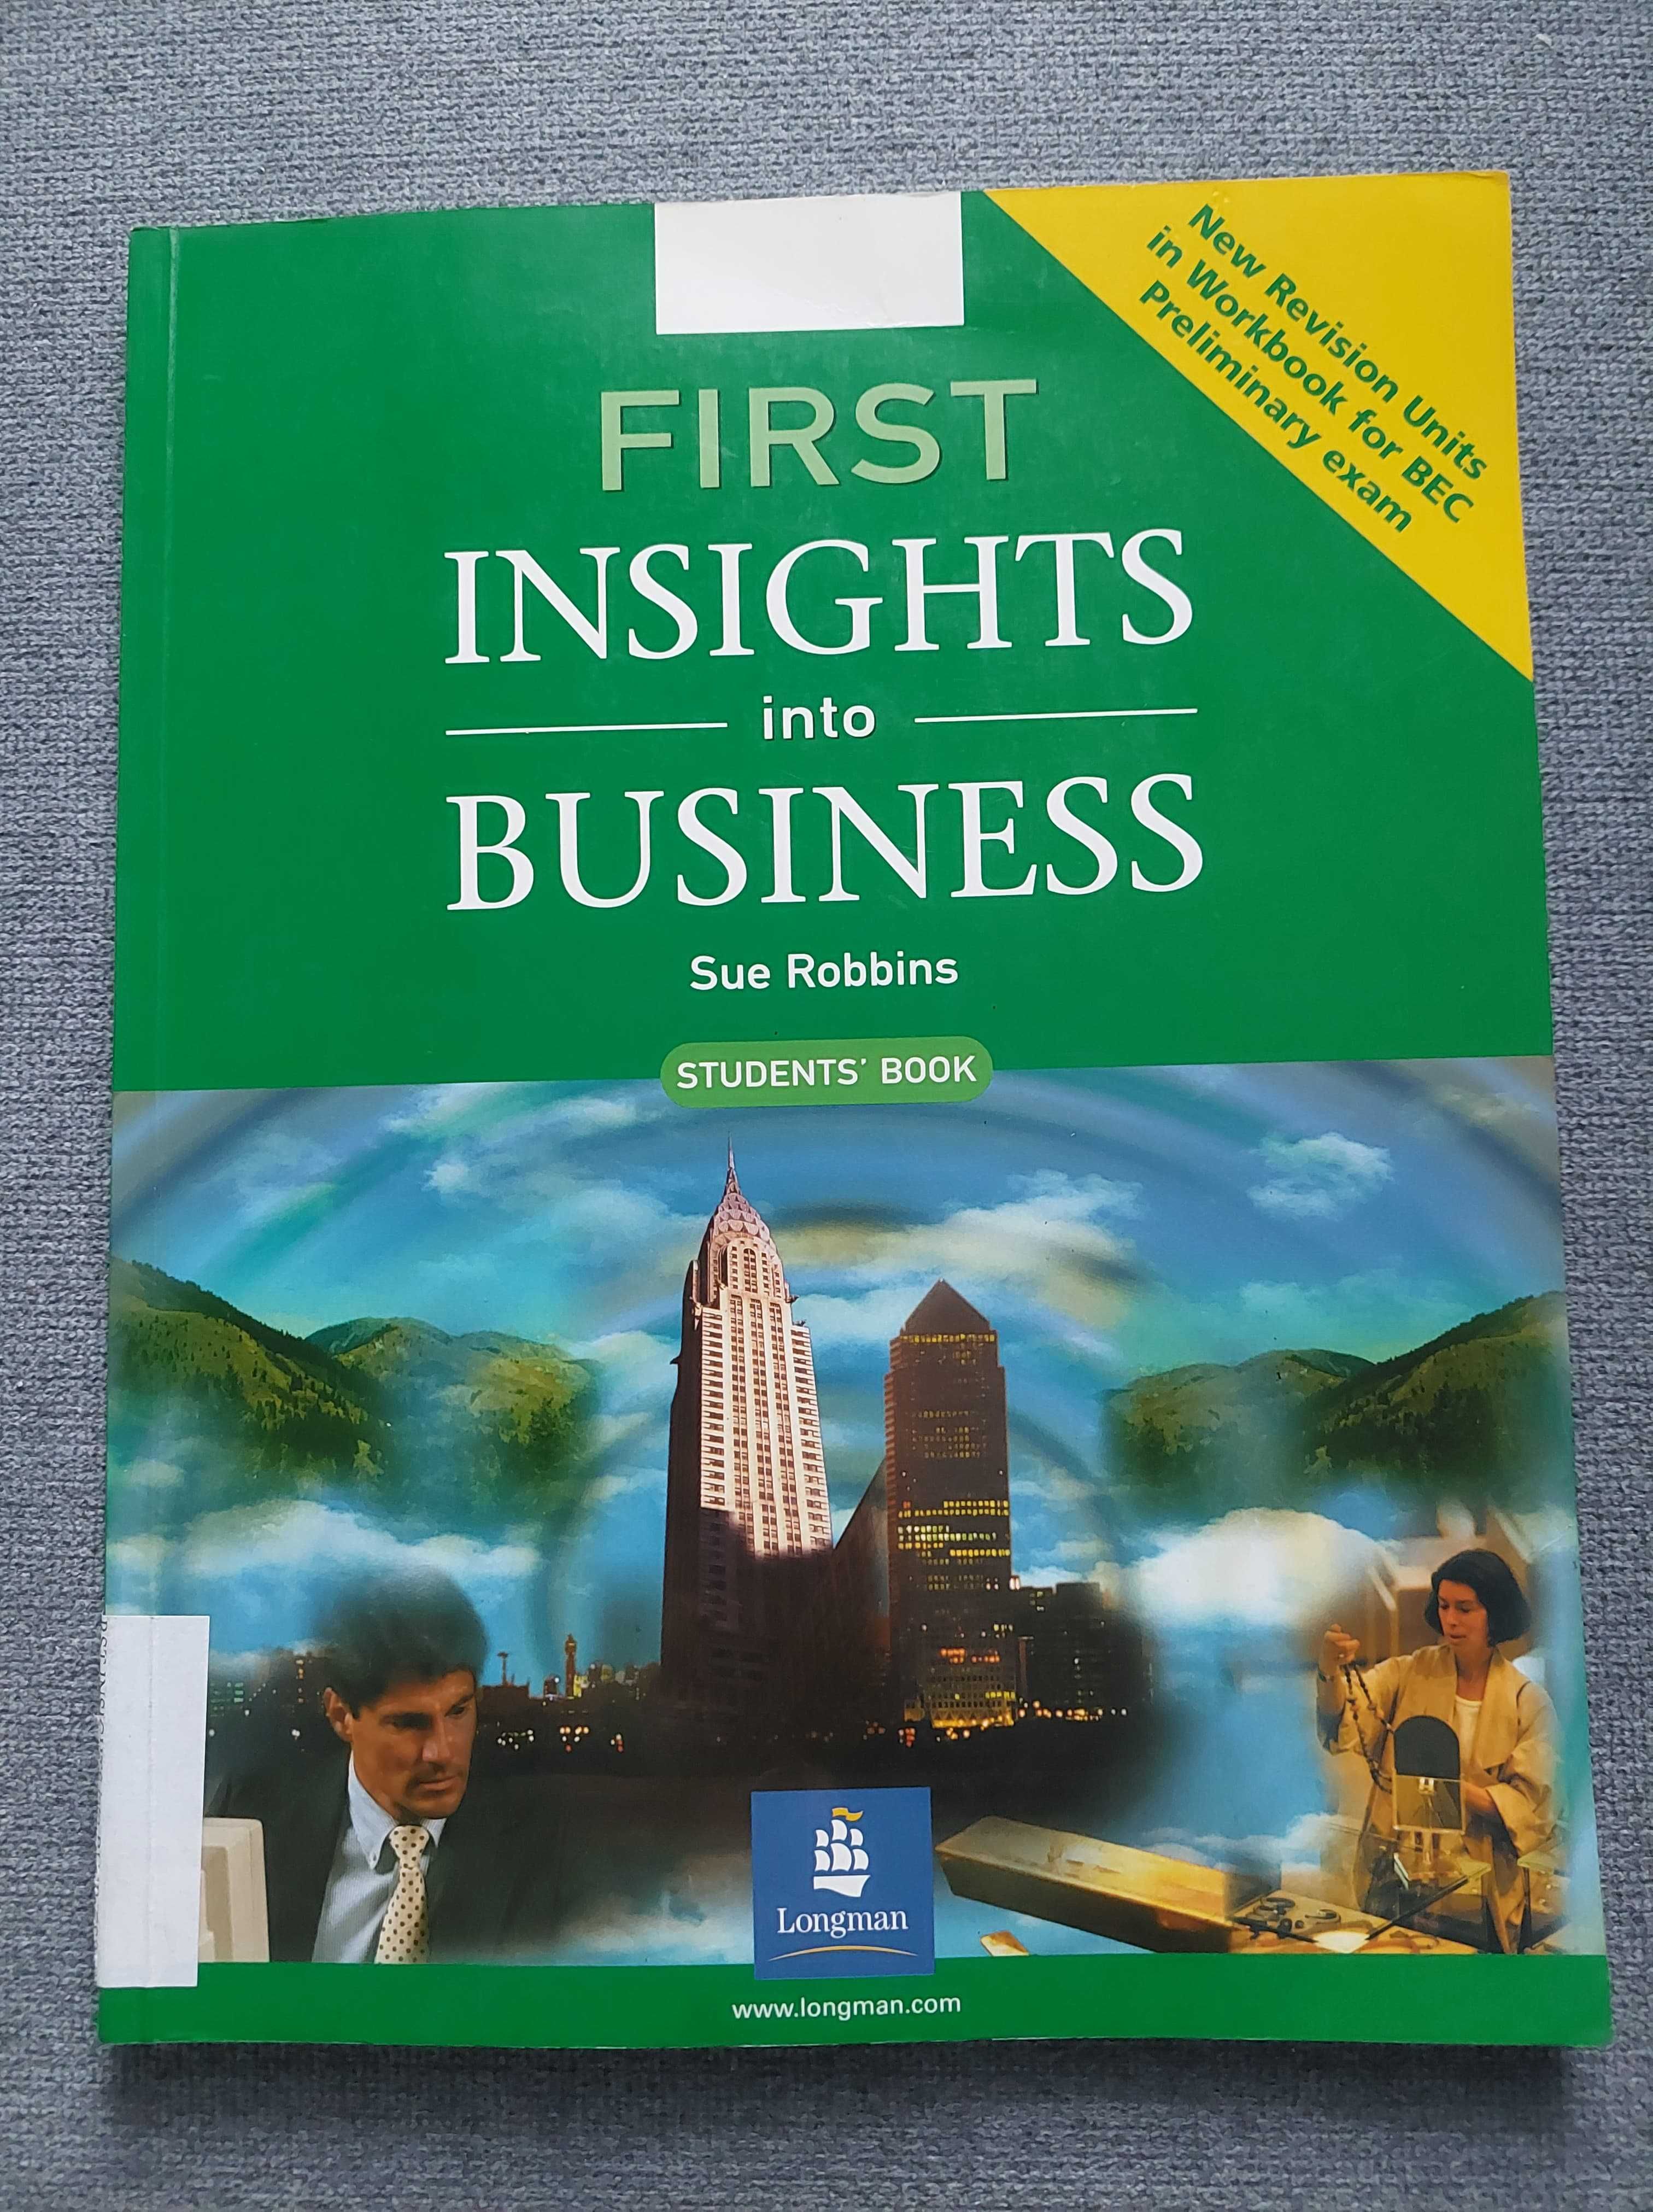 First Insights into Business angielski biznesowy podręcznik B1 BEC